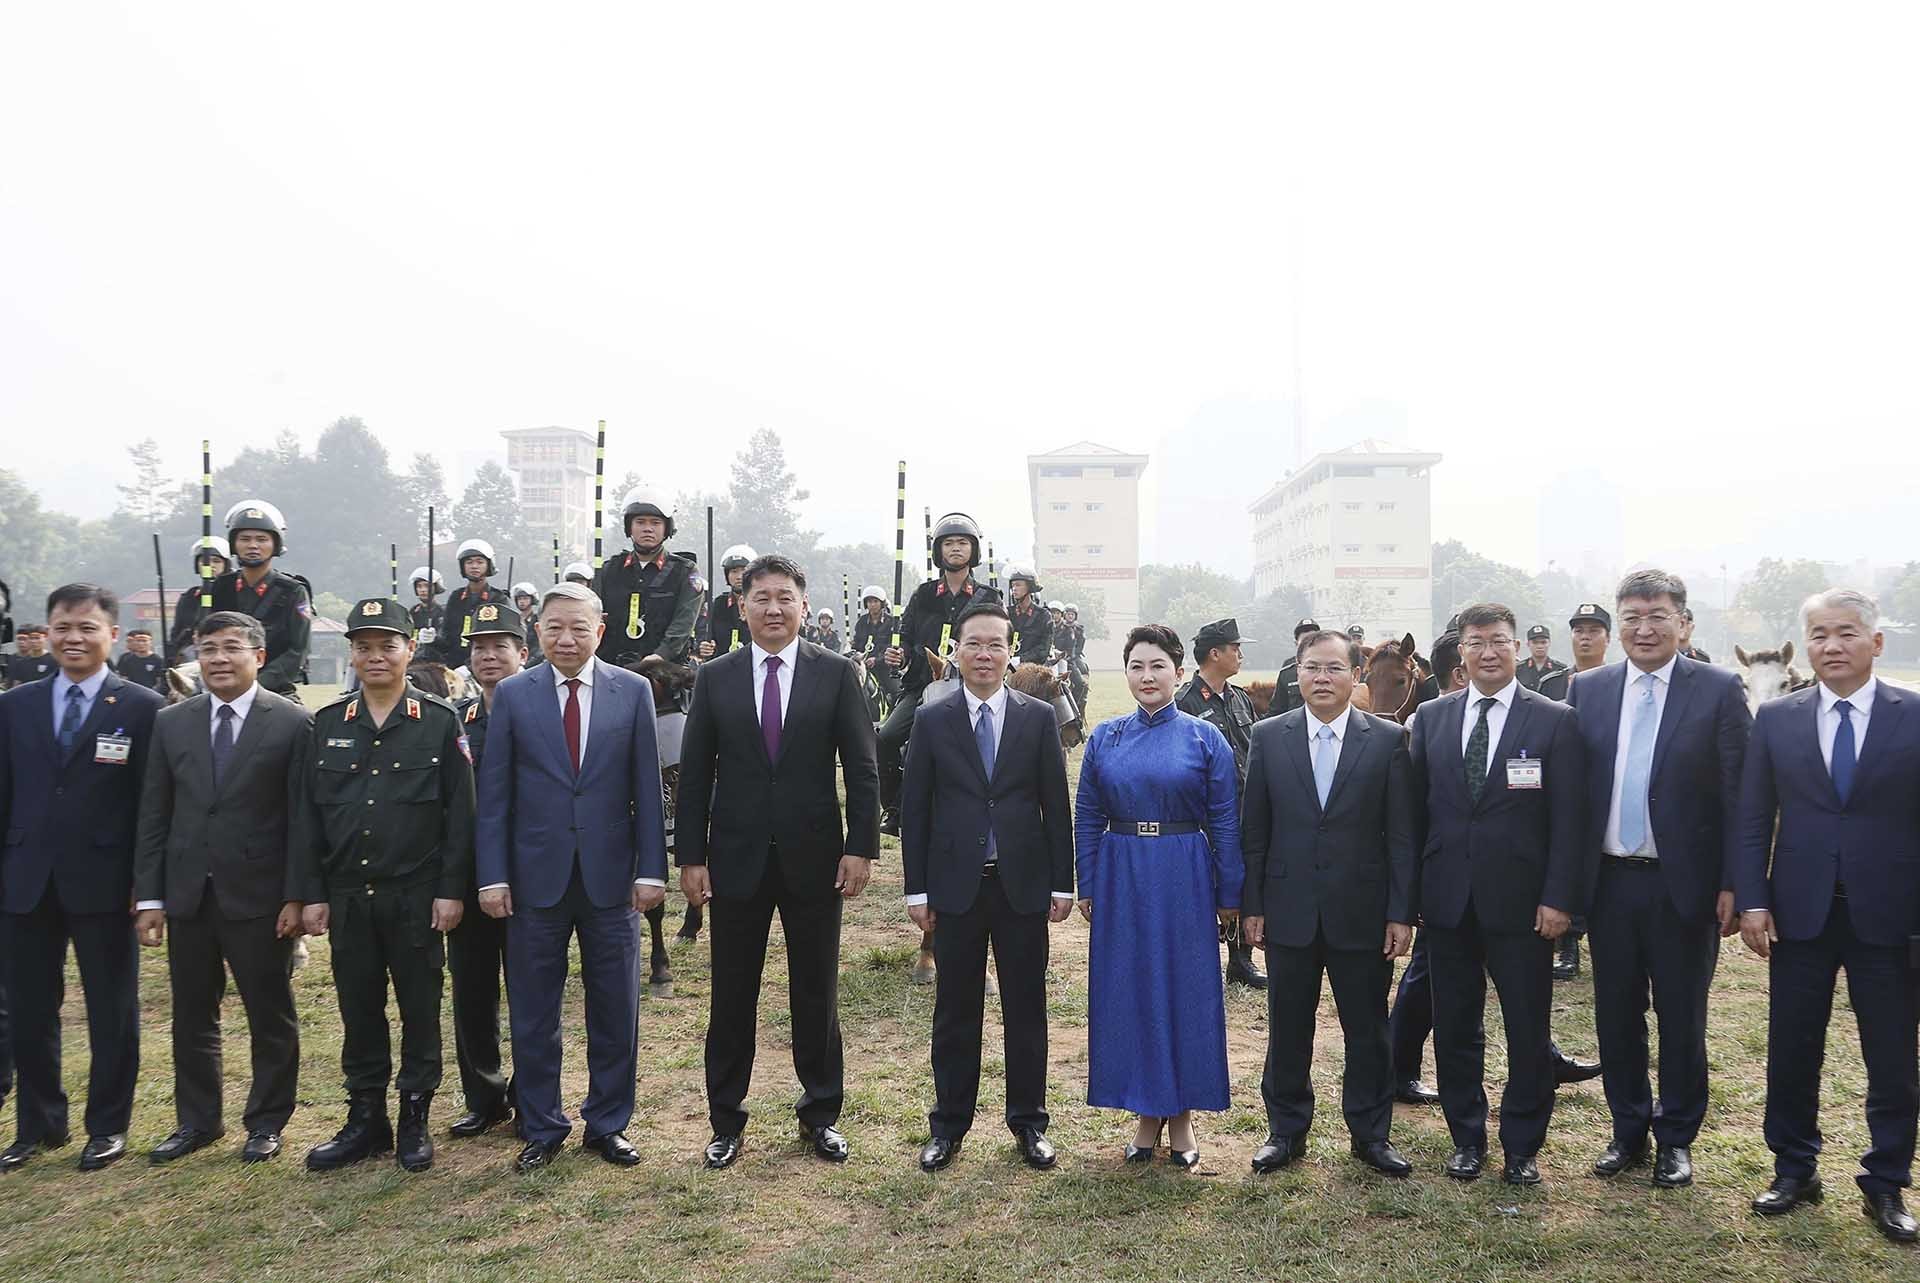 Chủ tịch nước Võ Văn Thưởng và Tổng thống Mông Cổ Ukhnaagiin Khurelsukh và các đại biểu với các chiến sĩ Cảnh sát cơ động kỵ binh. Ảnh: Thống Nhất – TTXVN